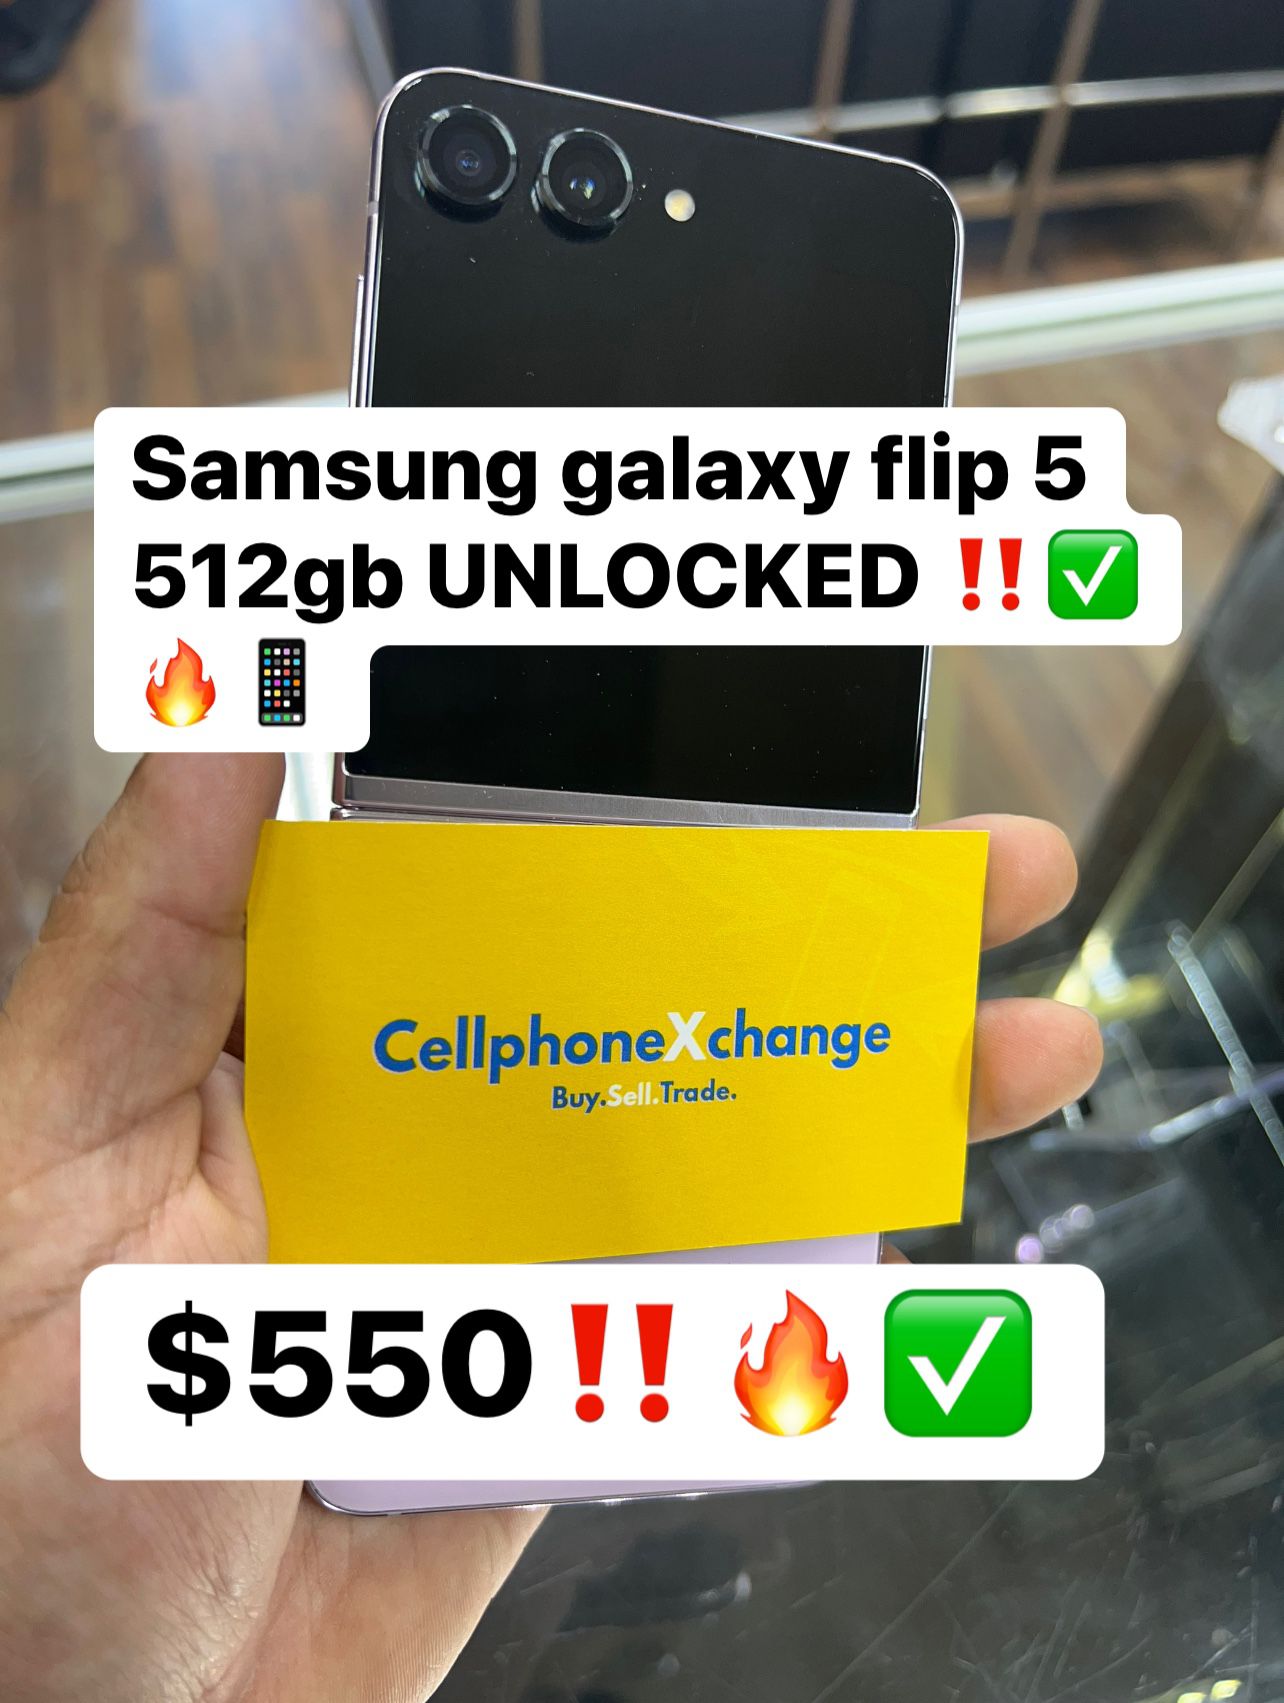 Samsung Galaxy Flip 5 512gb UNLOCKED 